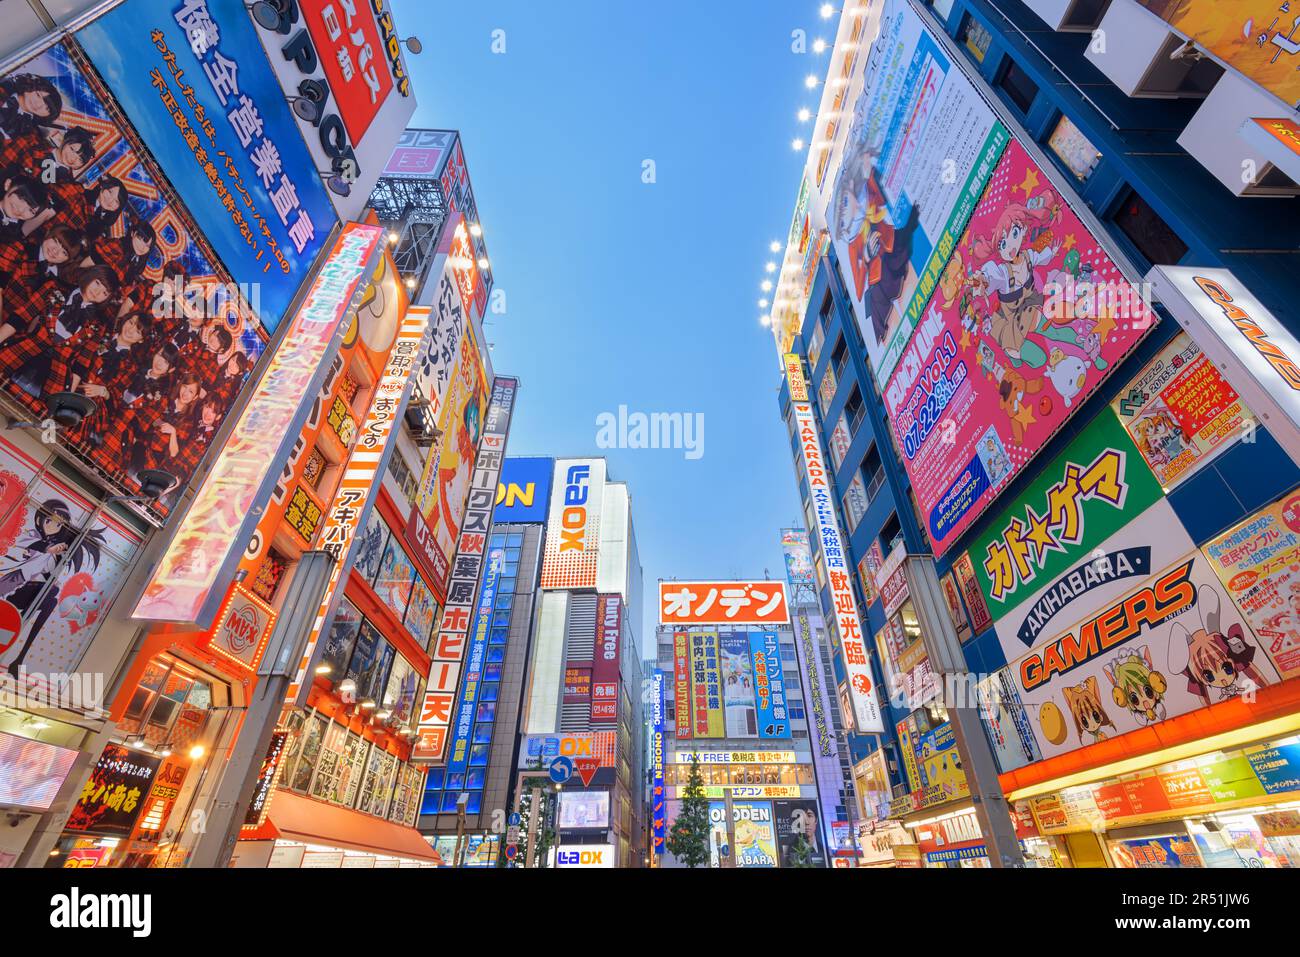 TOKYO, GIAPPONE - 1 AGOSTO 2015: Il quartiere dell'elettronica di Akihabara è un'area commerciale per videogiochi, anime, manga e articoli per computer. Foto Stock